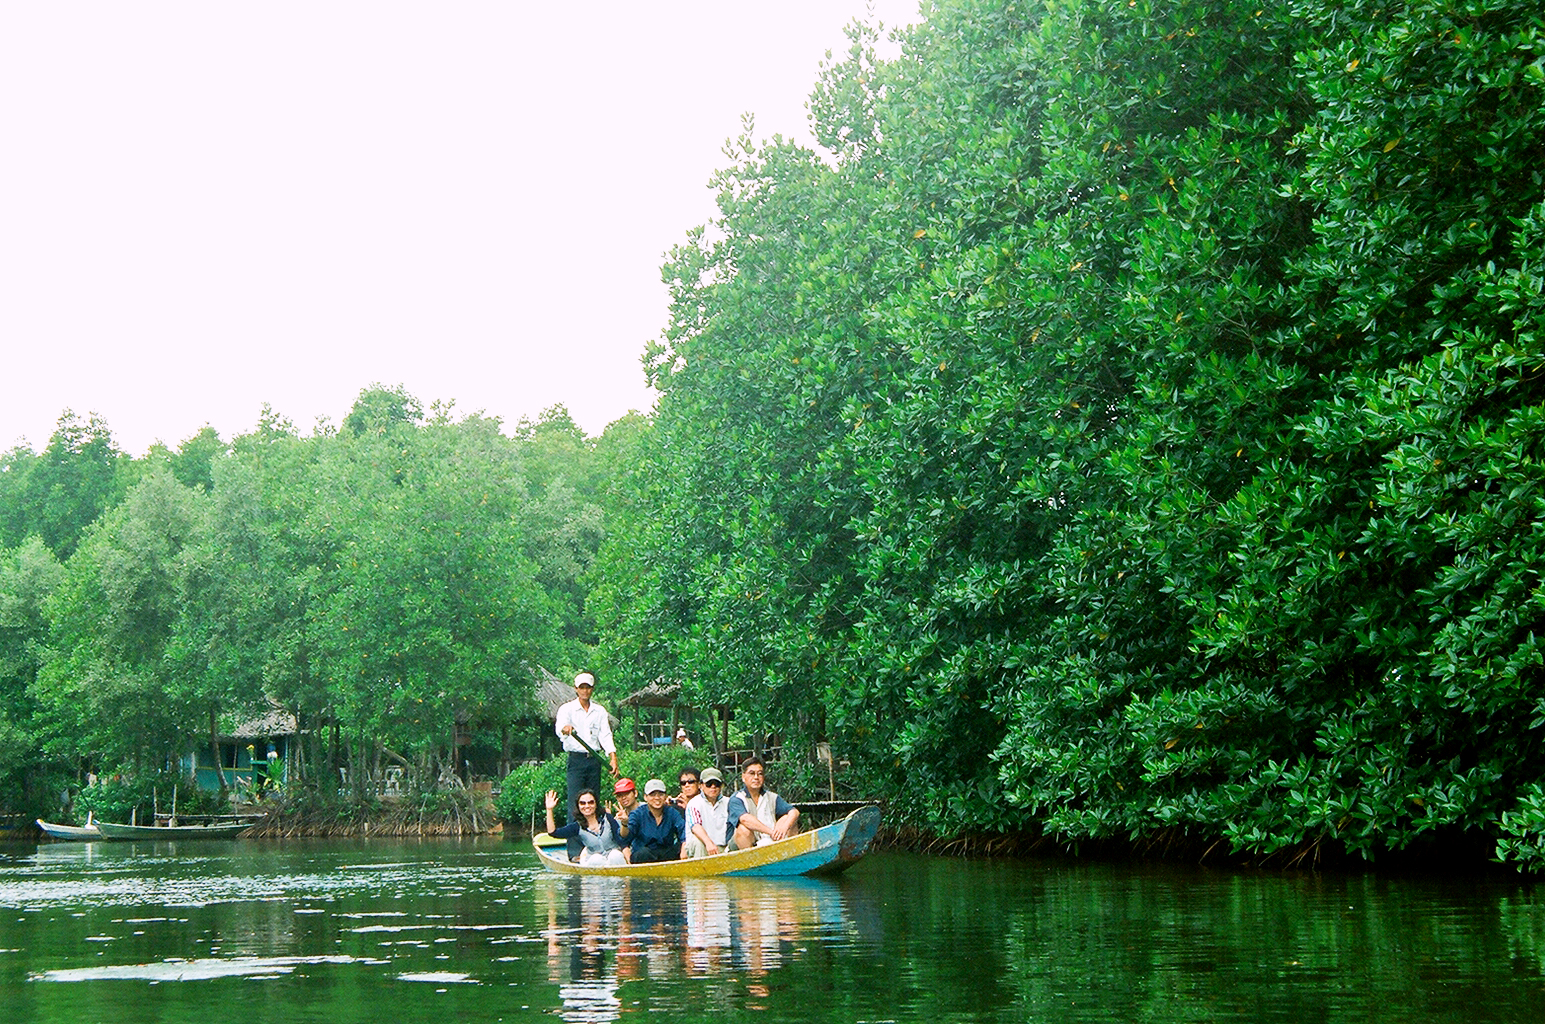 La biosphère de Cân Gio dans le top 100 des destinations touristiques durables